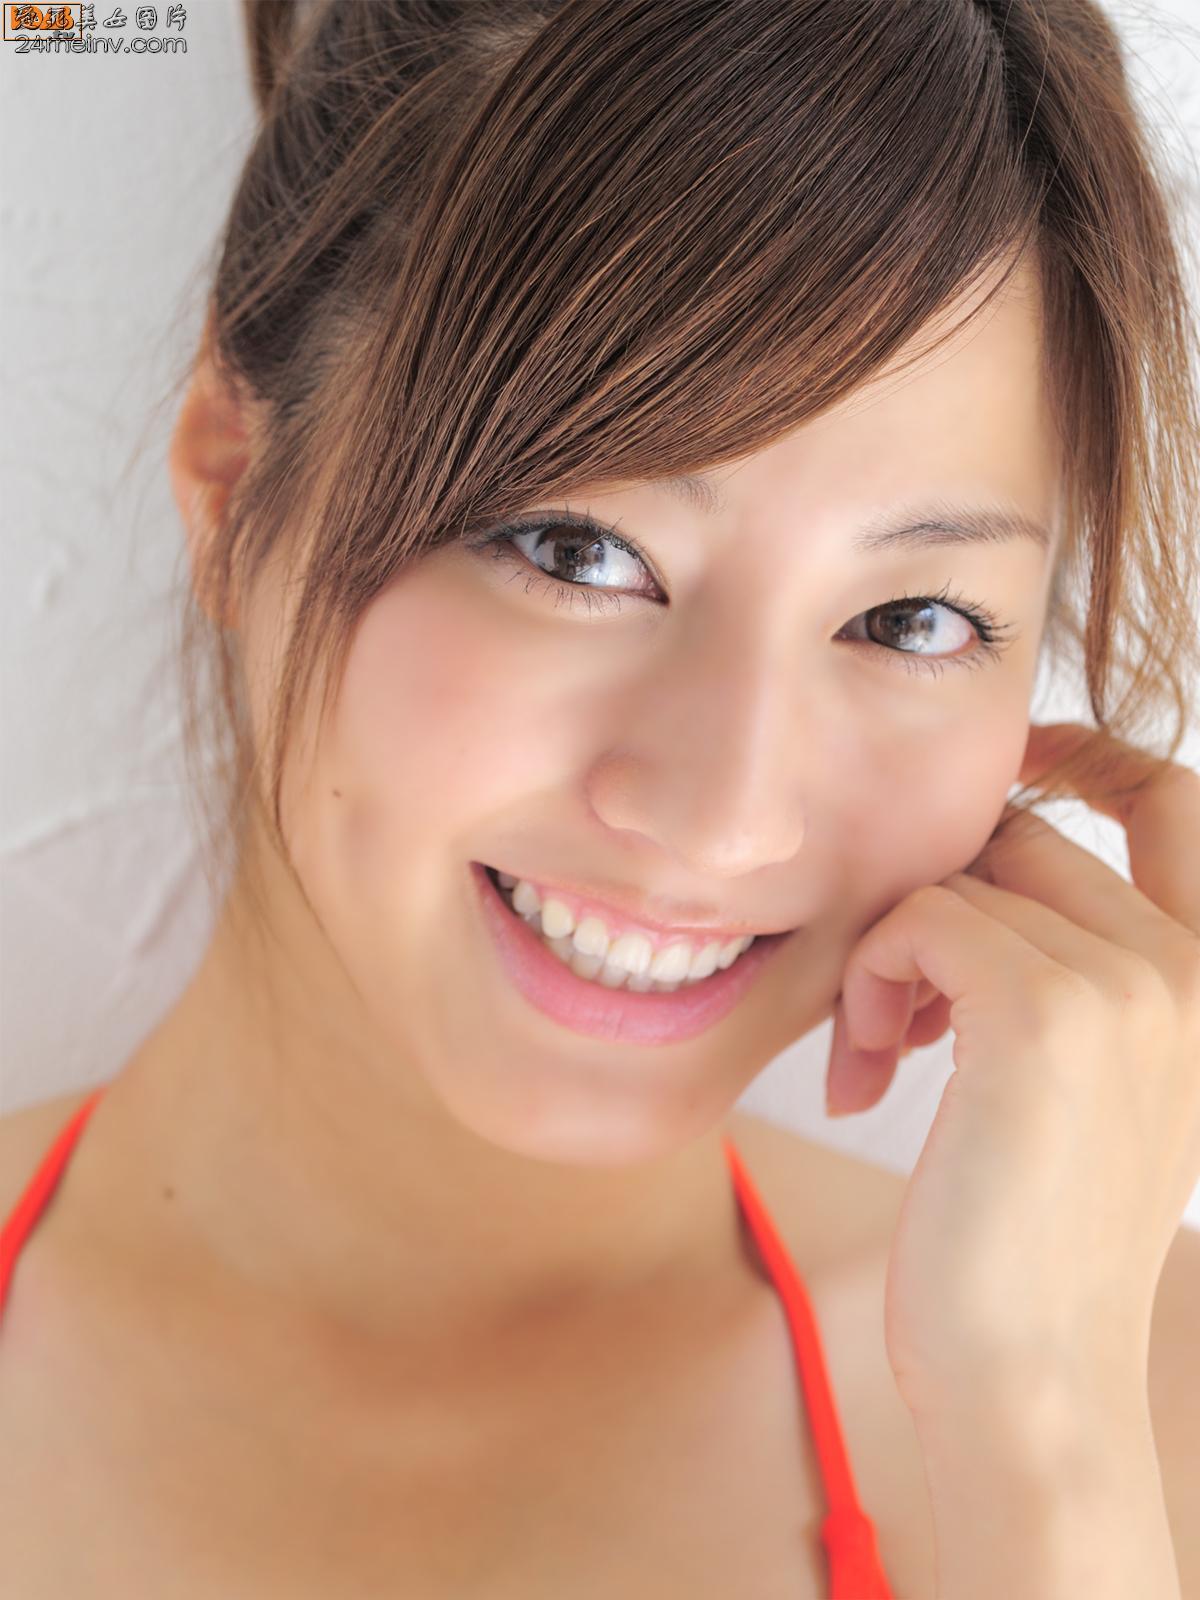 Japan's most beautiful actress - Yuki Sugimoto